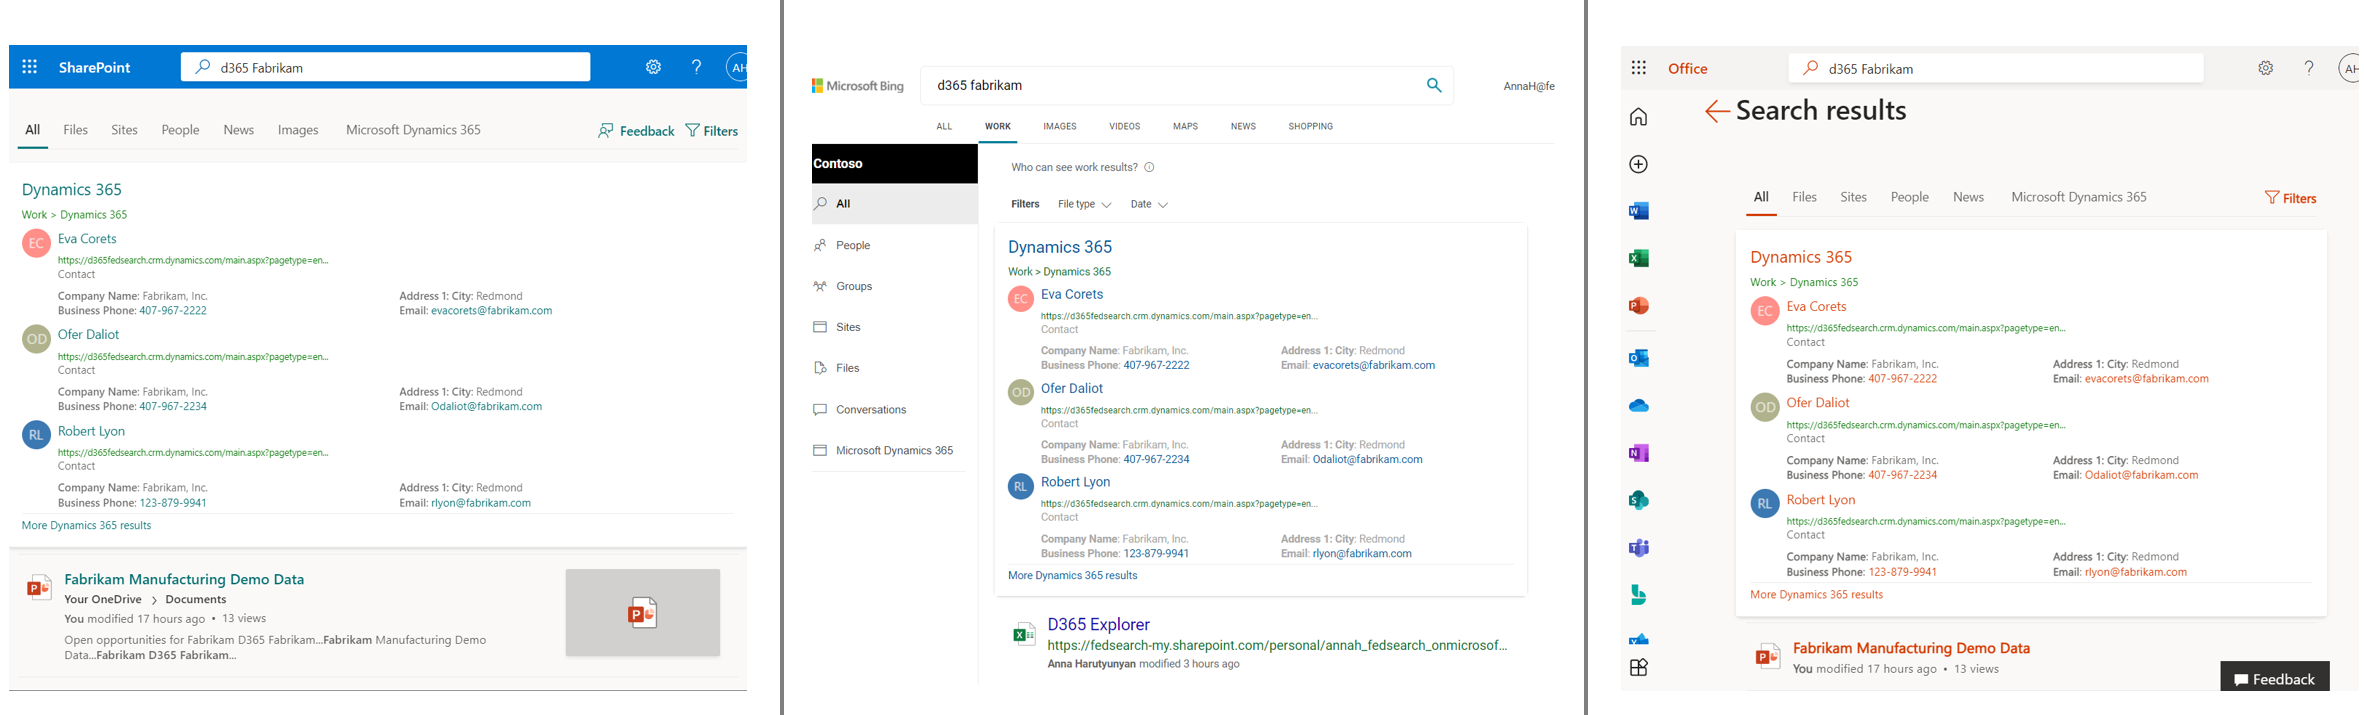 Capture d’écran des réponses Dynamics 365 sur SharePoint, Bing et Office.